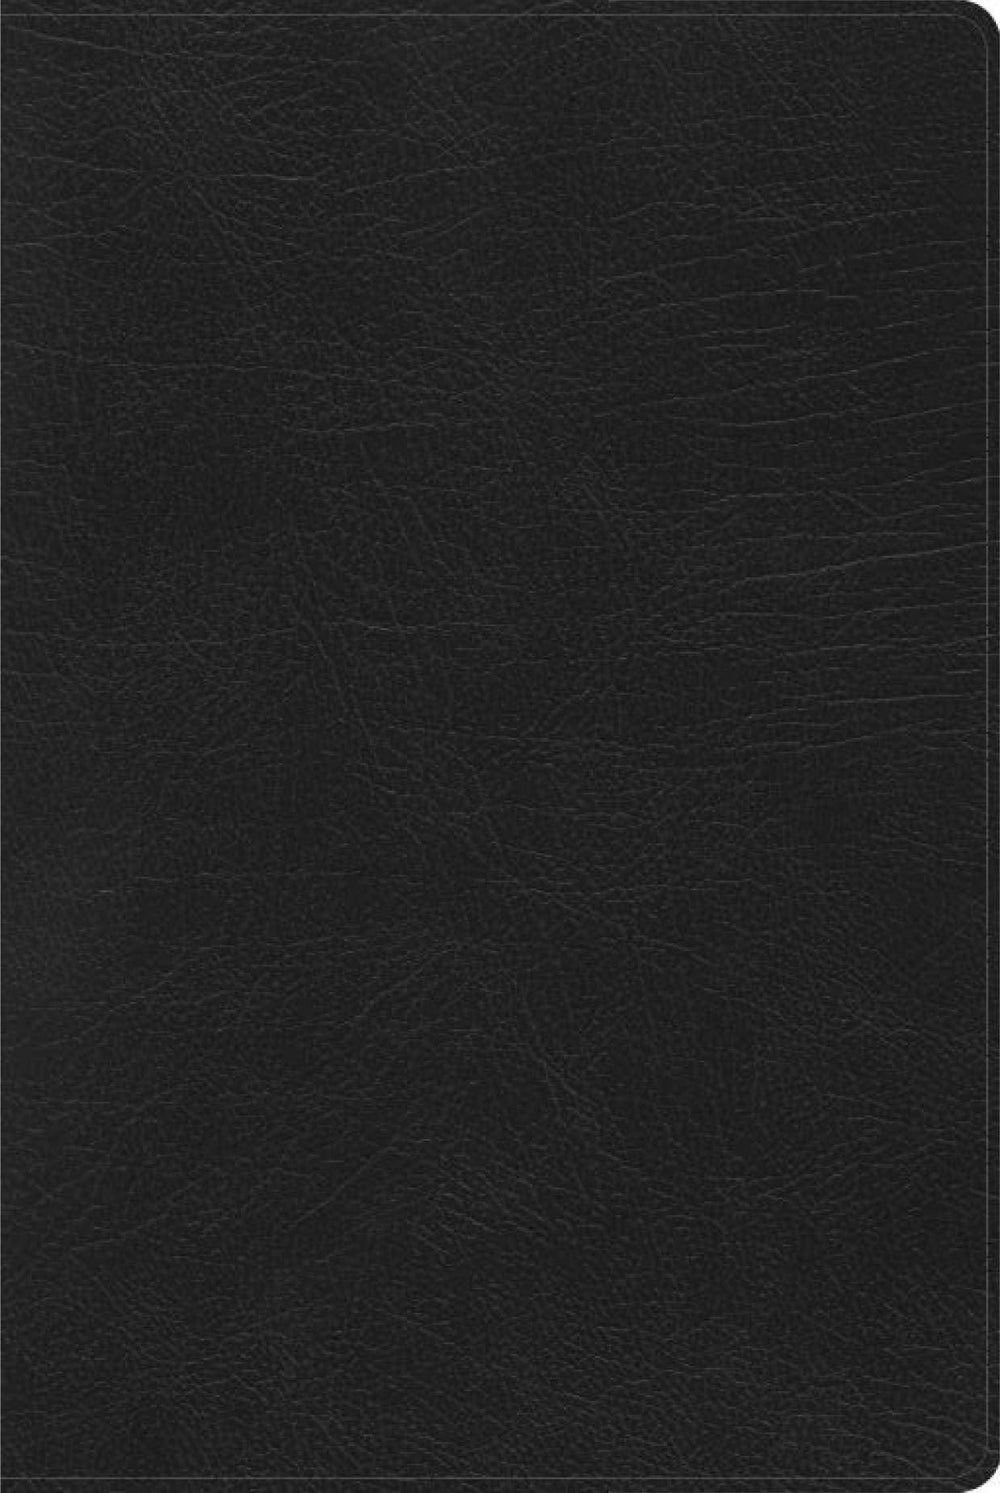 RVR 1960 Biblia de Estudio Arcoiris, negro símil piel - Pura Vida Books